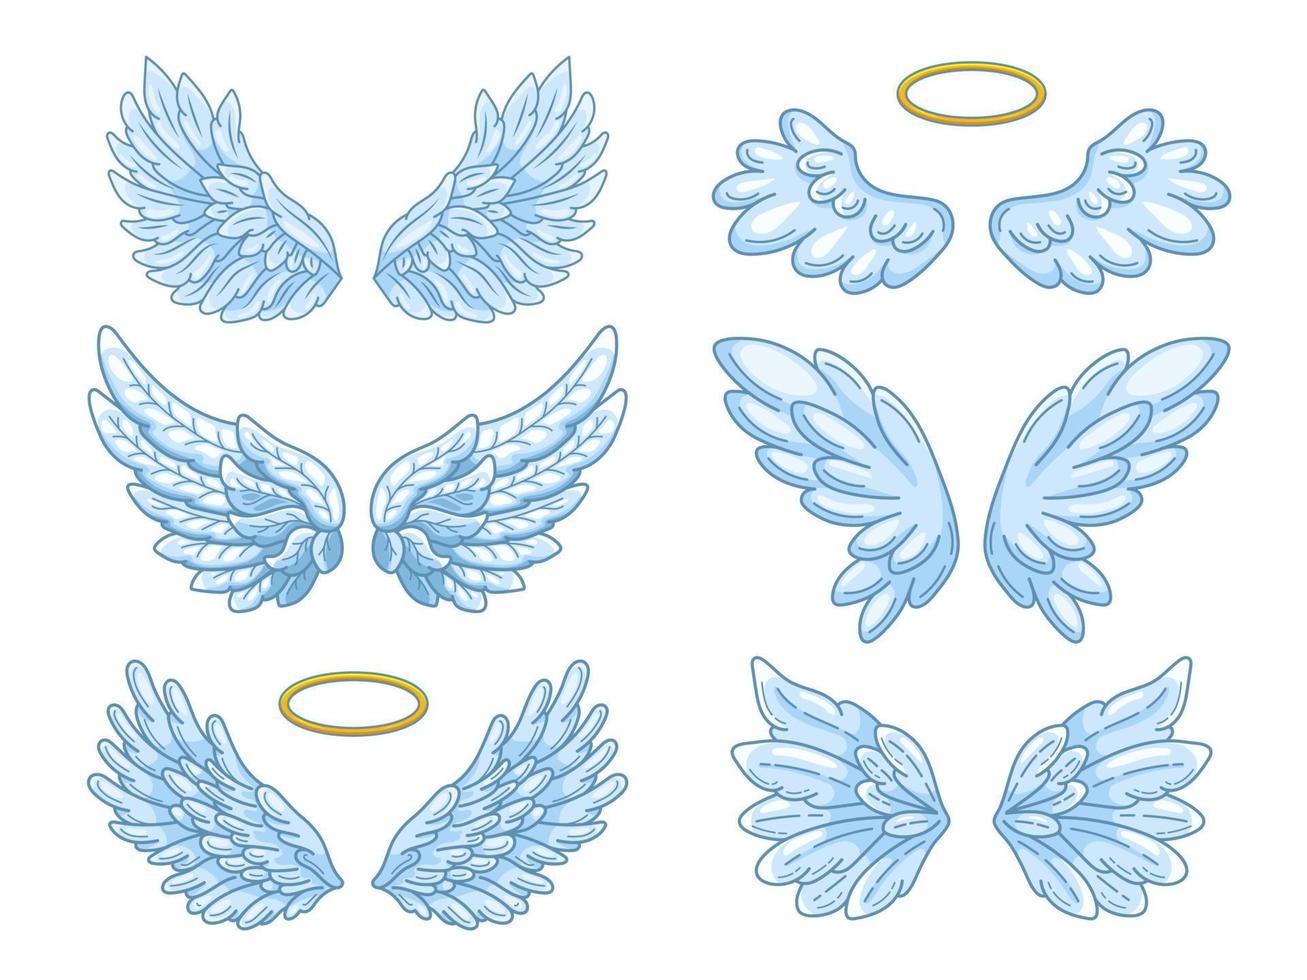 samling av breda blåa änglavingar med gyllene gloria. konturritning i modern linjestil med volym. vektor illustration isolerade på vitt.